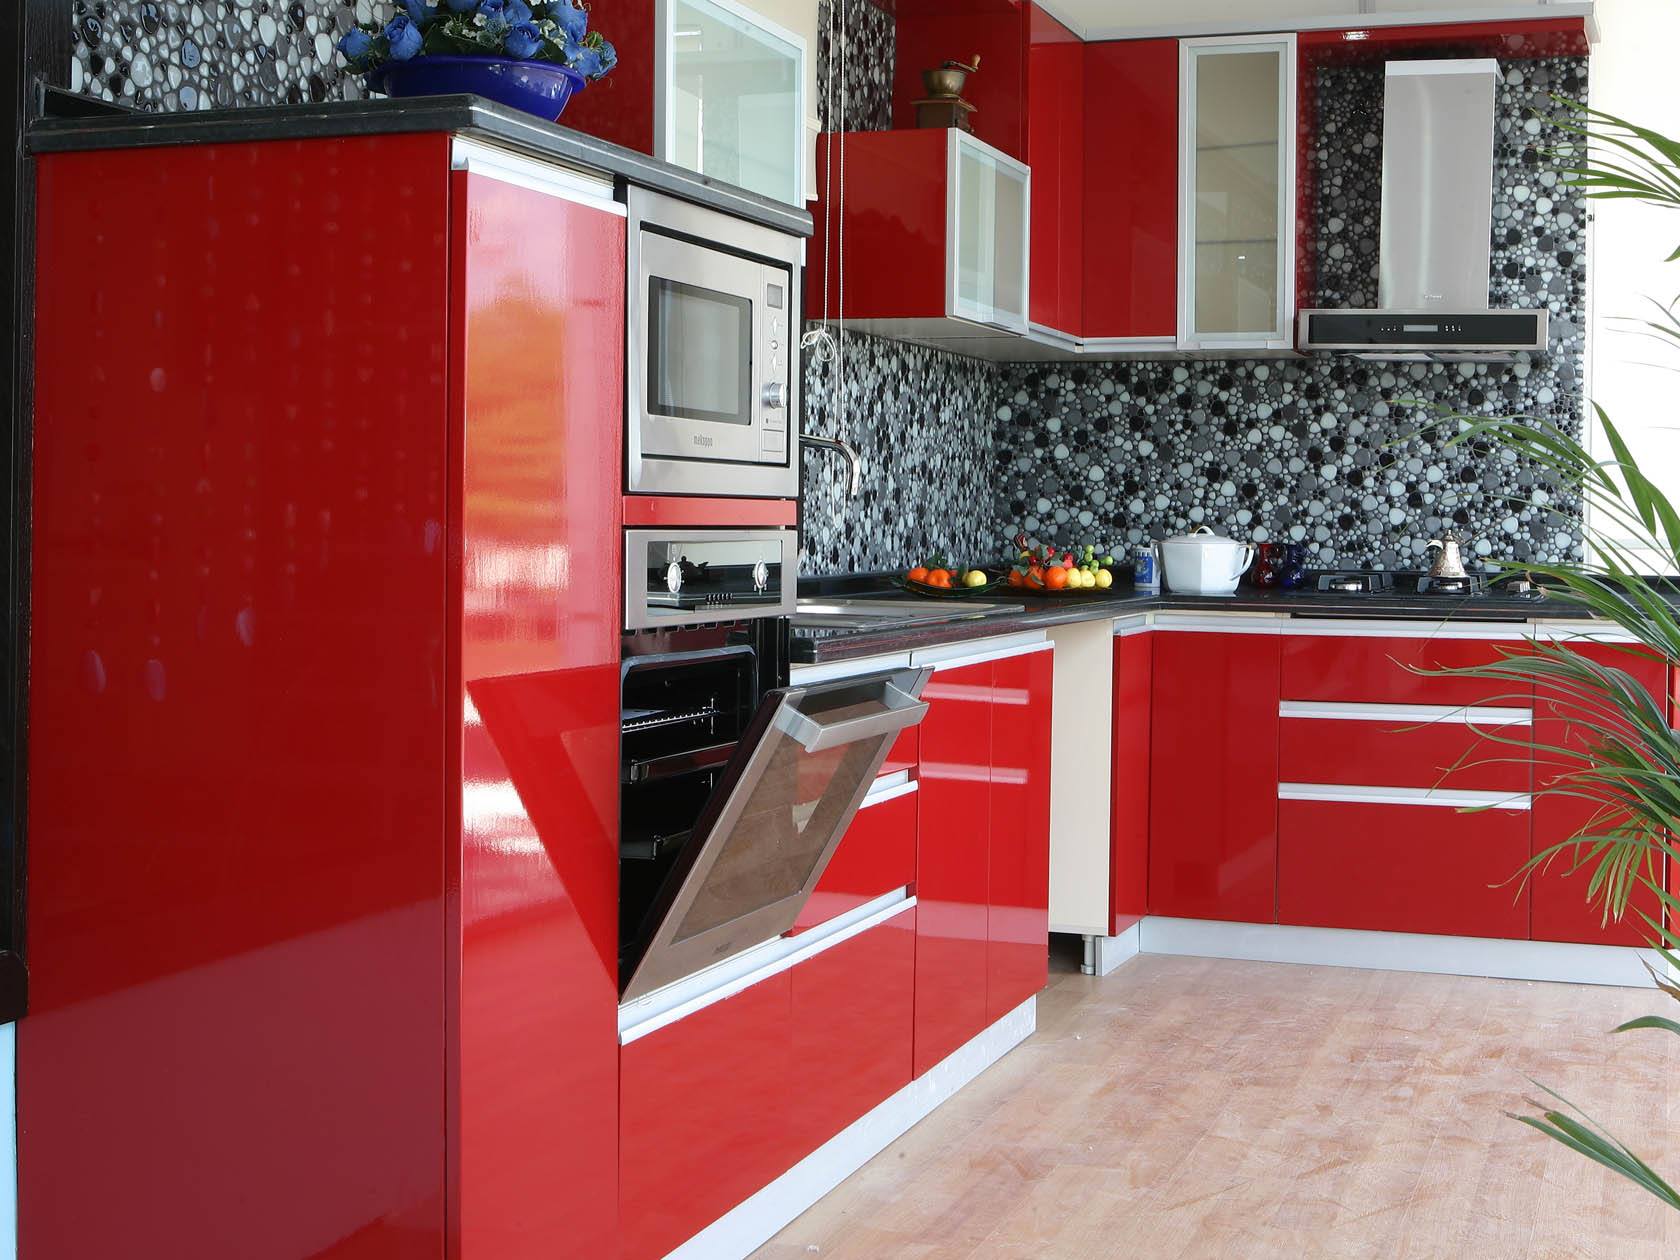 Kırmızı renkli dolaplarla tasarlanmış mutfak modelleri